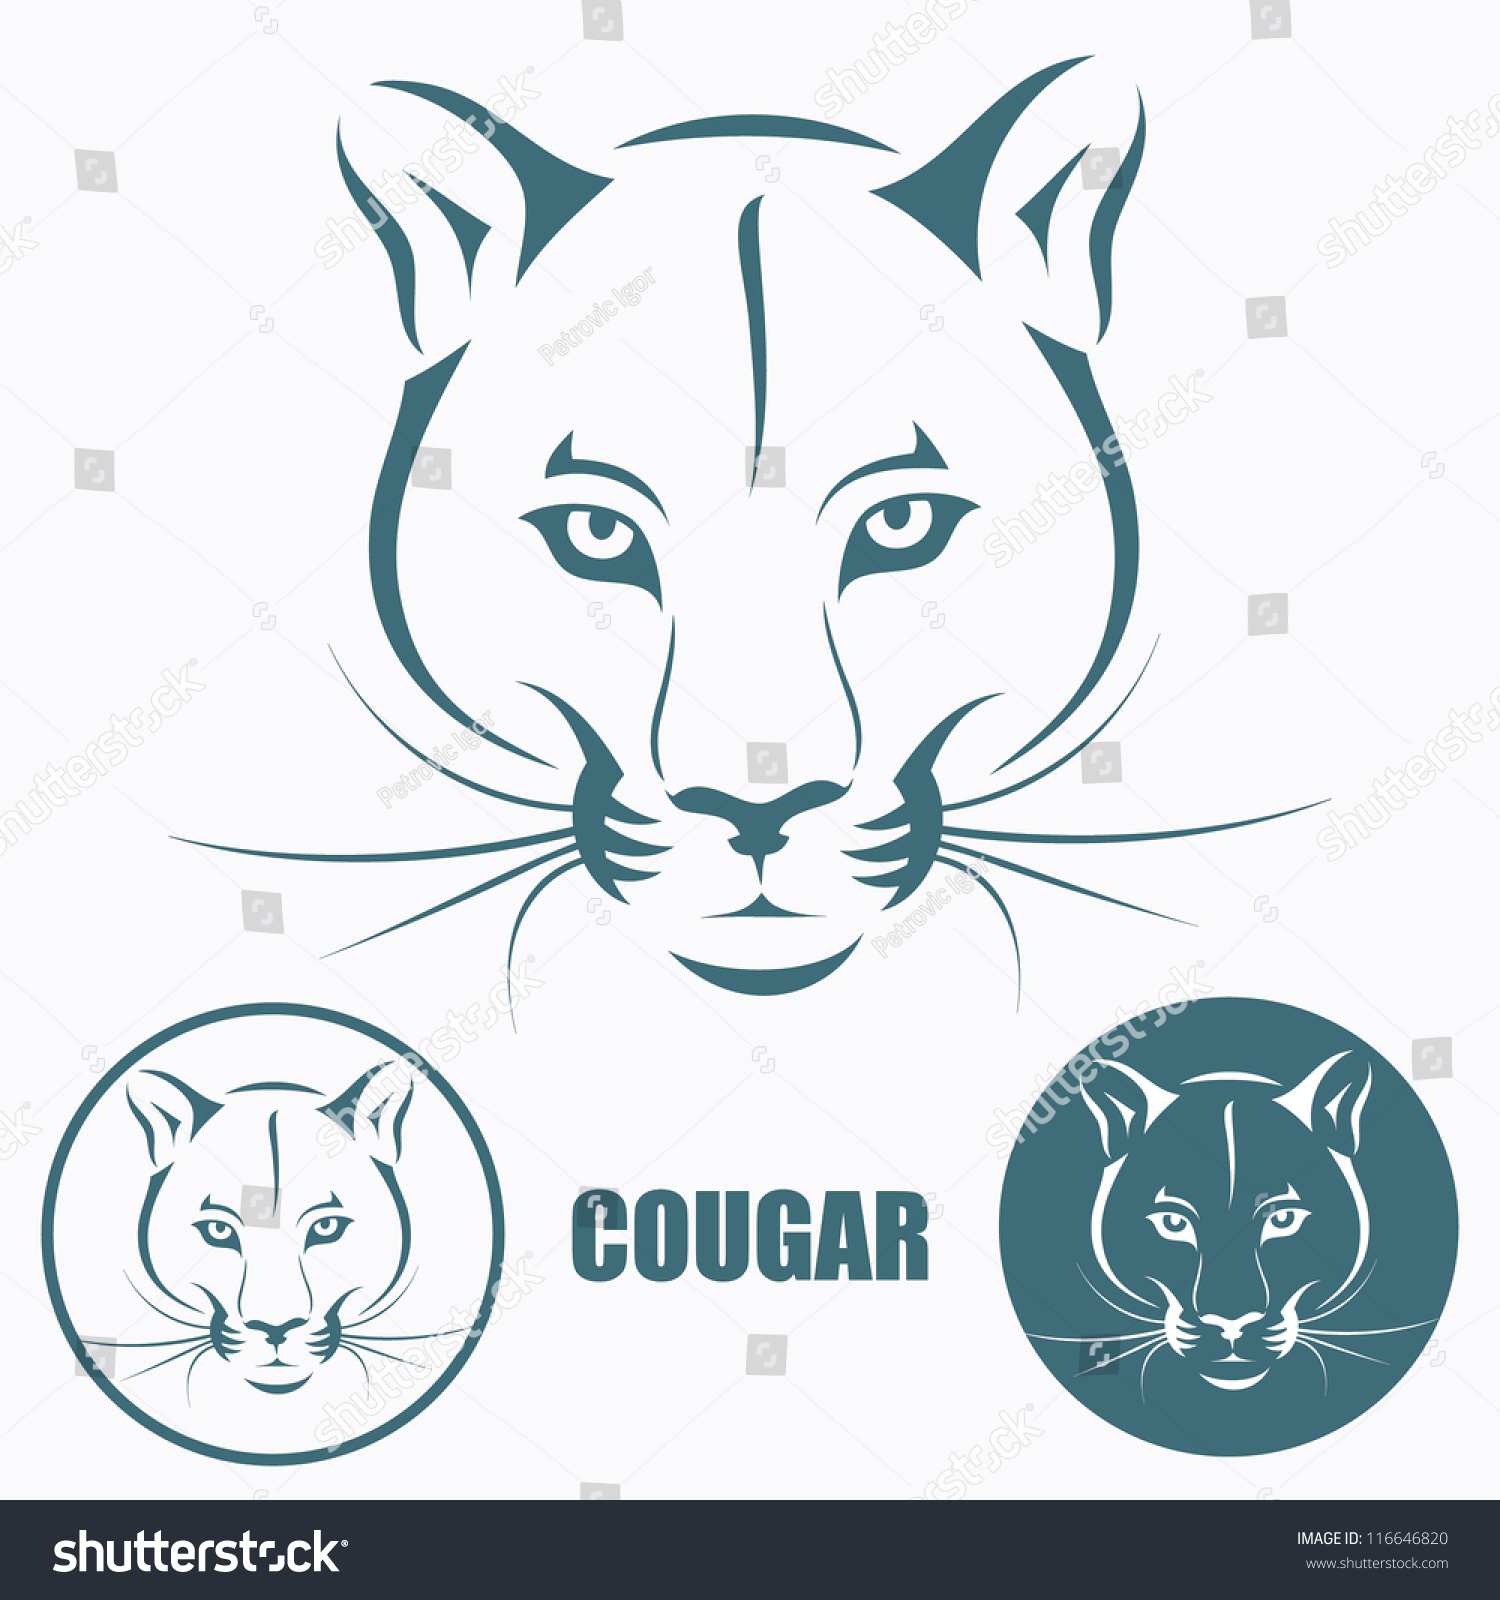 Cougar Head - Vector Illustration - 116646820 : Shutterstock